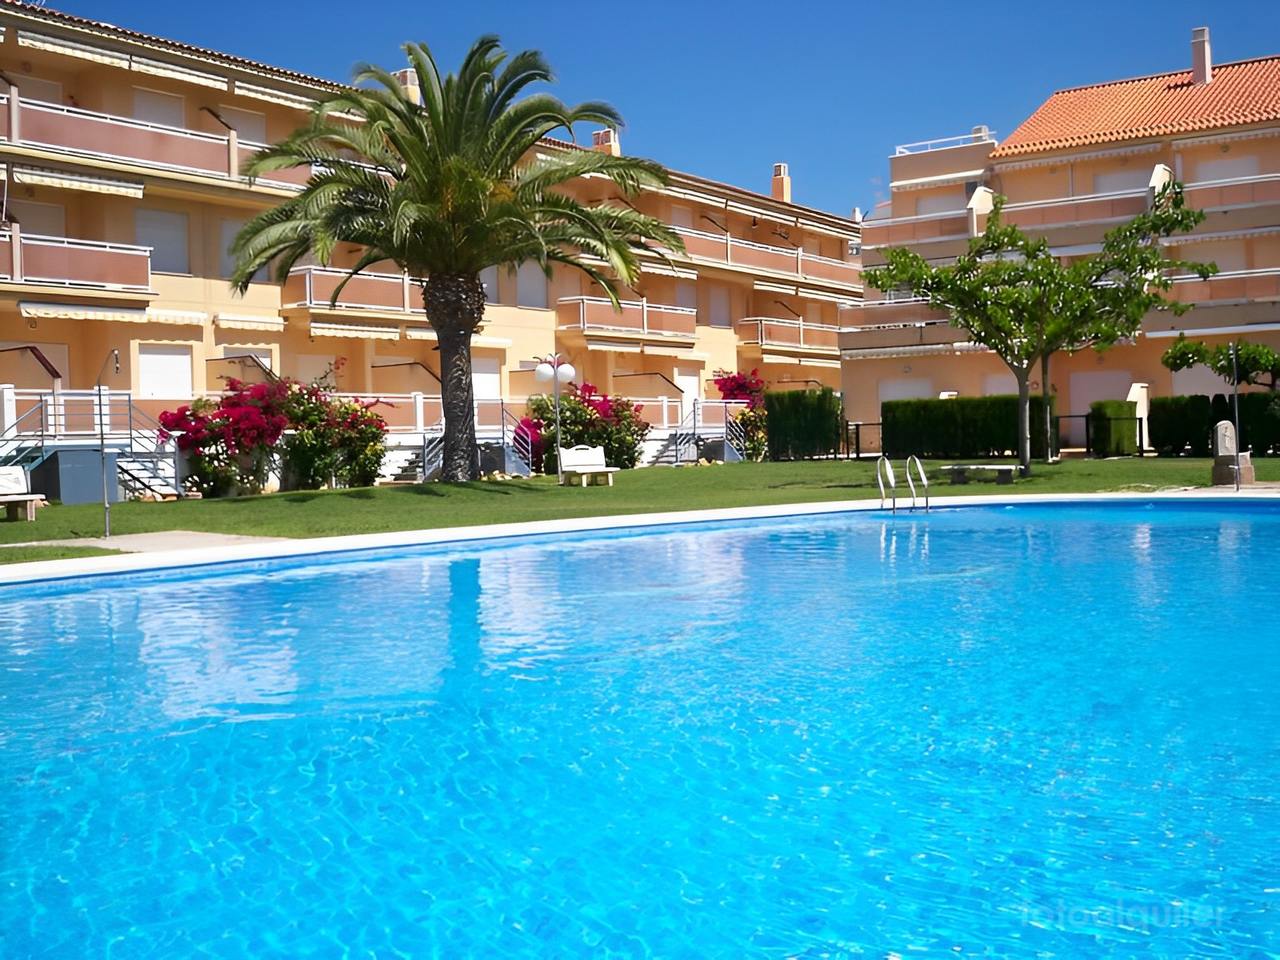 Apartamento para vacaciones en Alcocebre playa del Cargador, urbanización El Castell